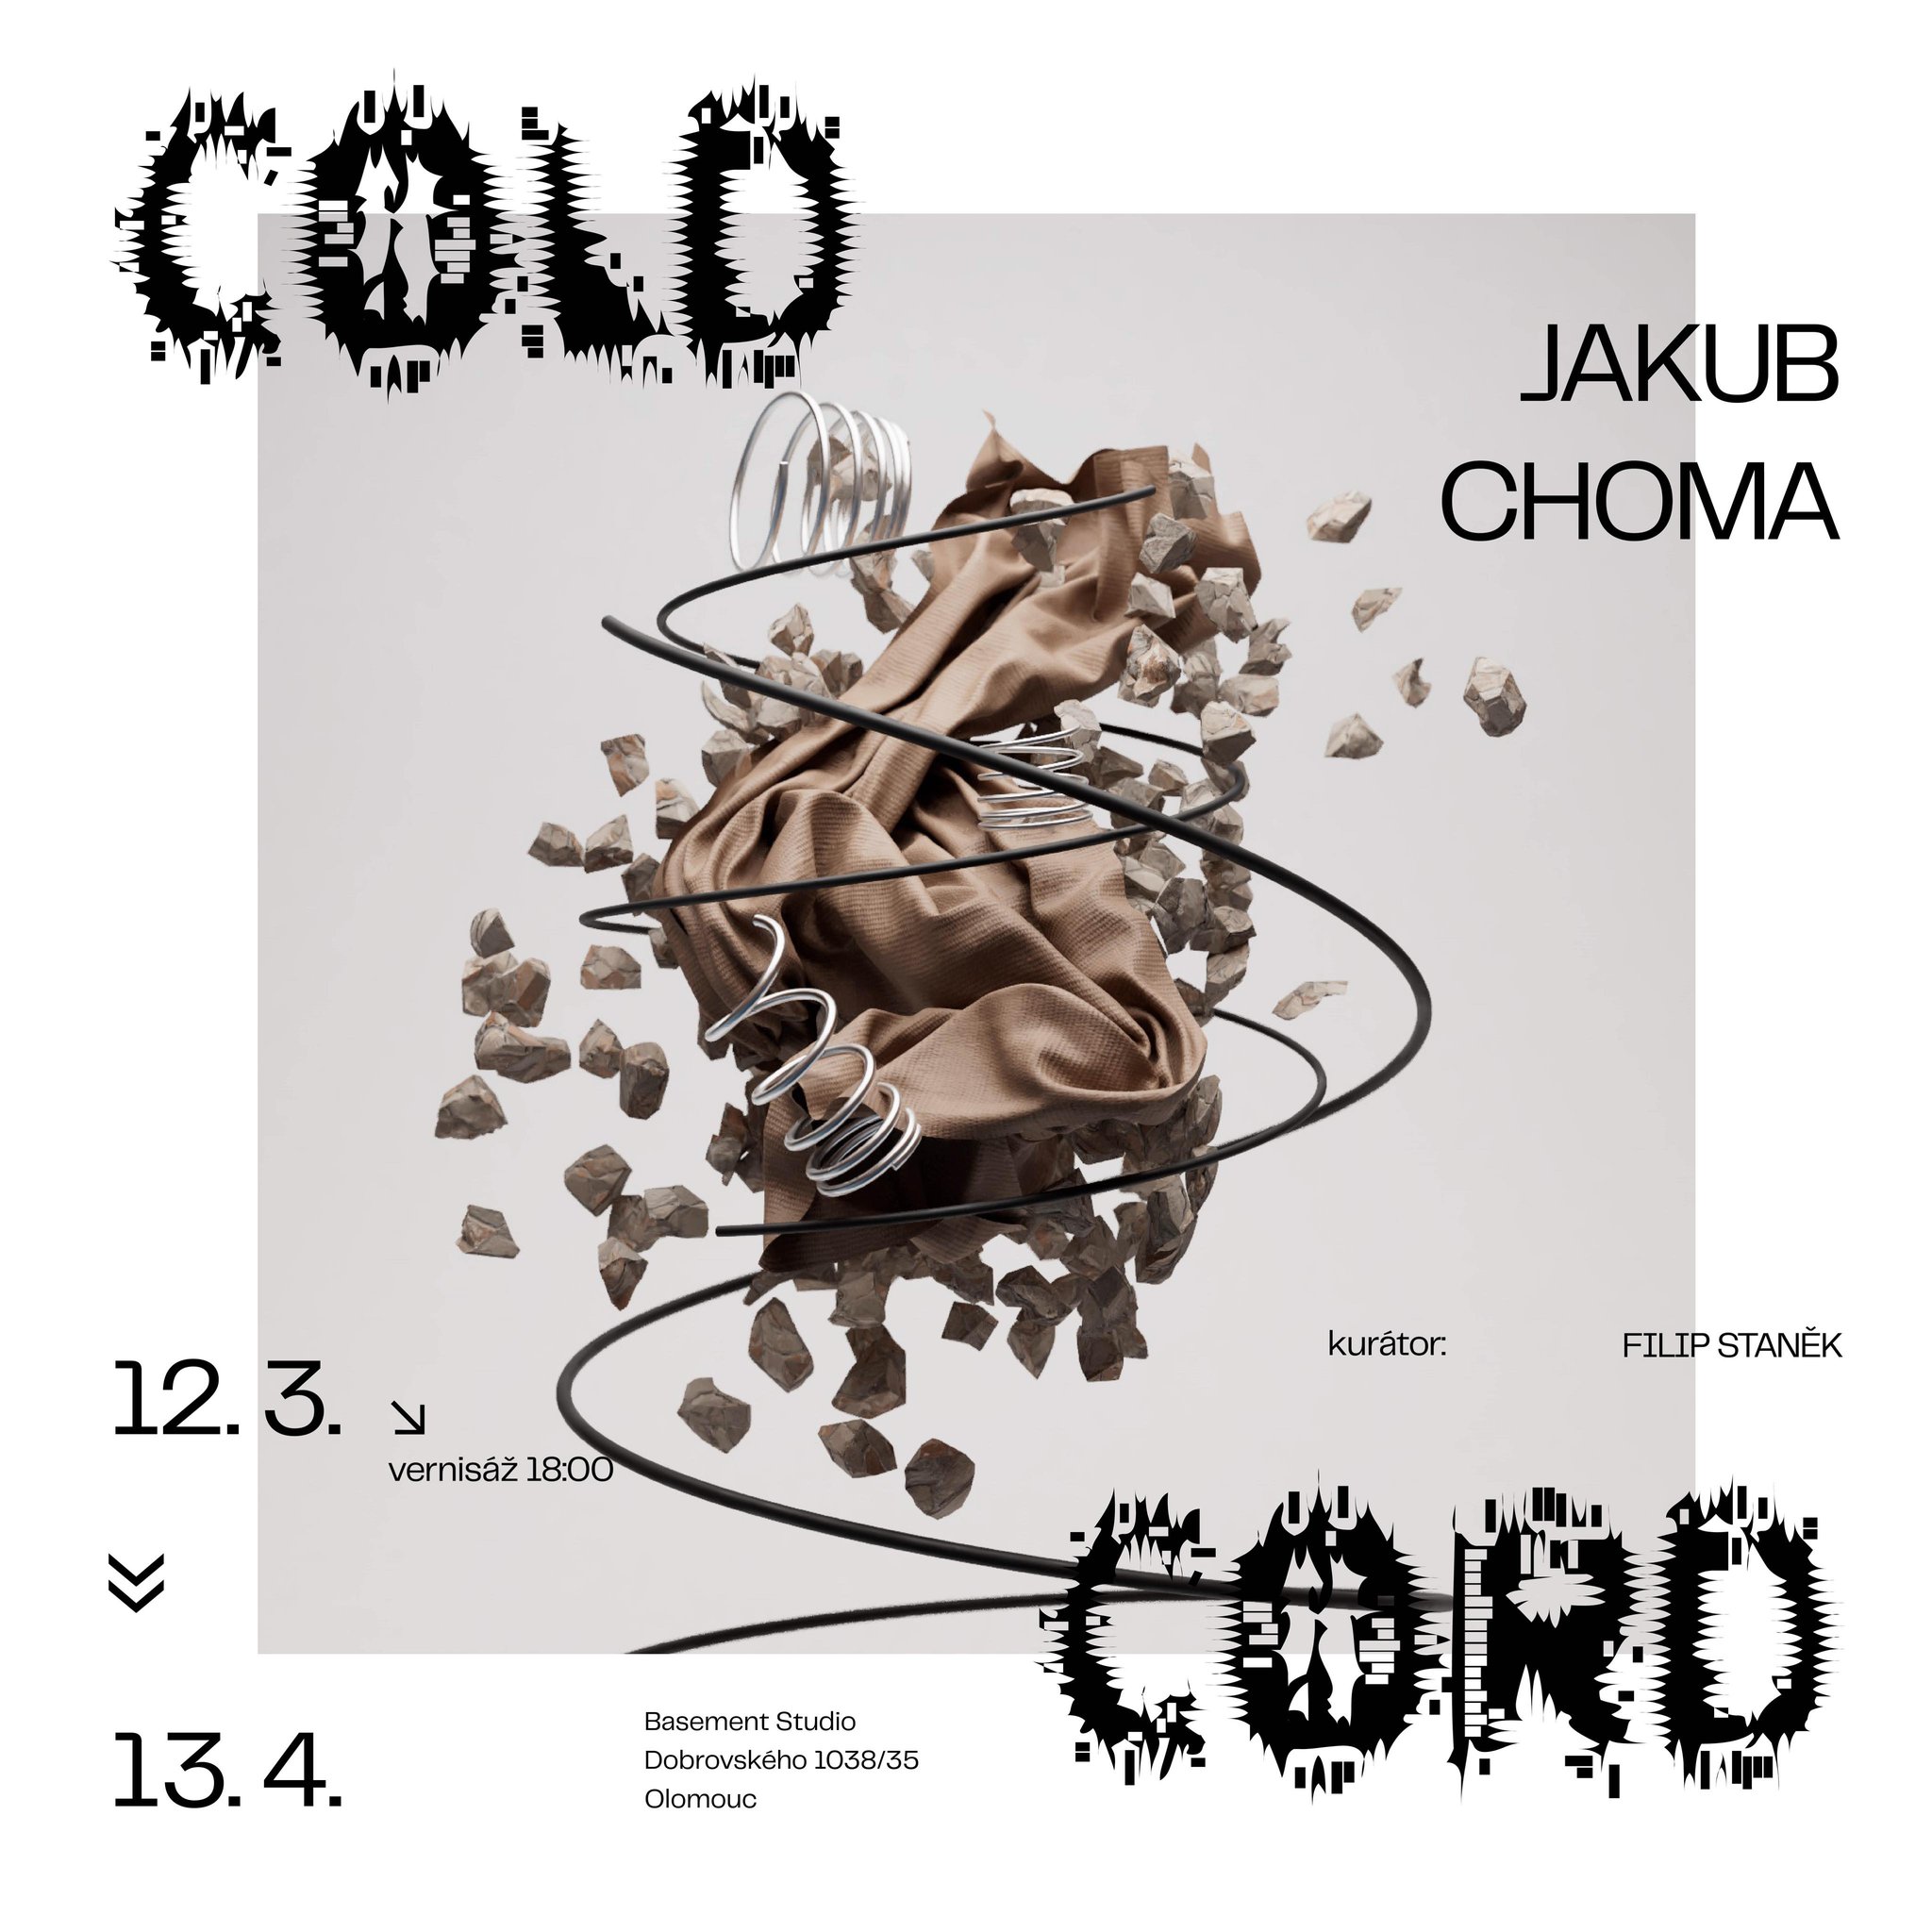 Jakub Choma: Cold cord